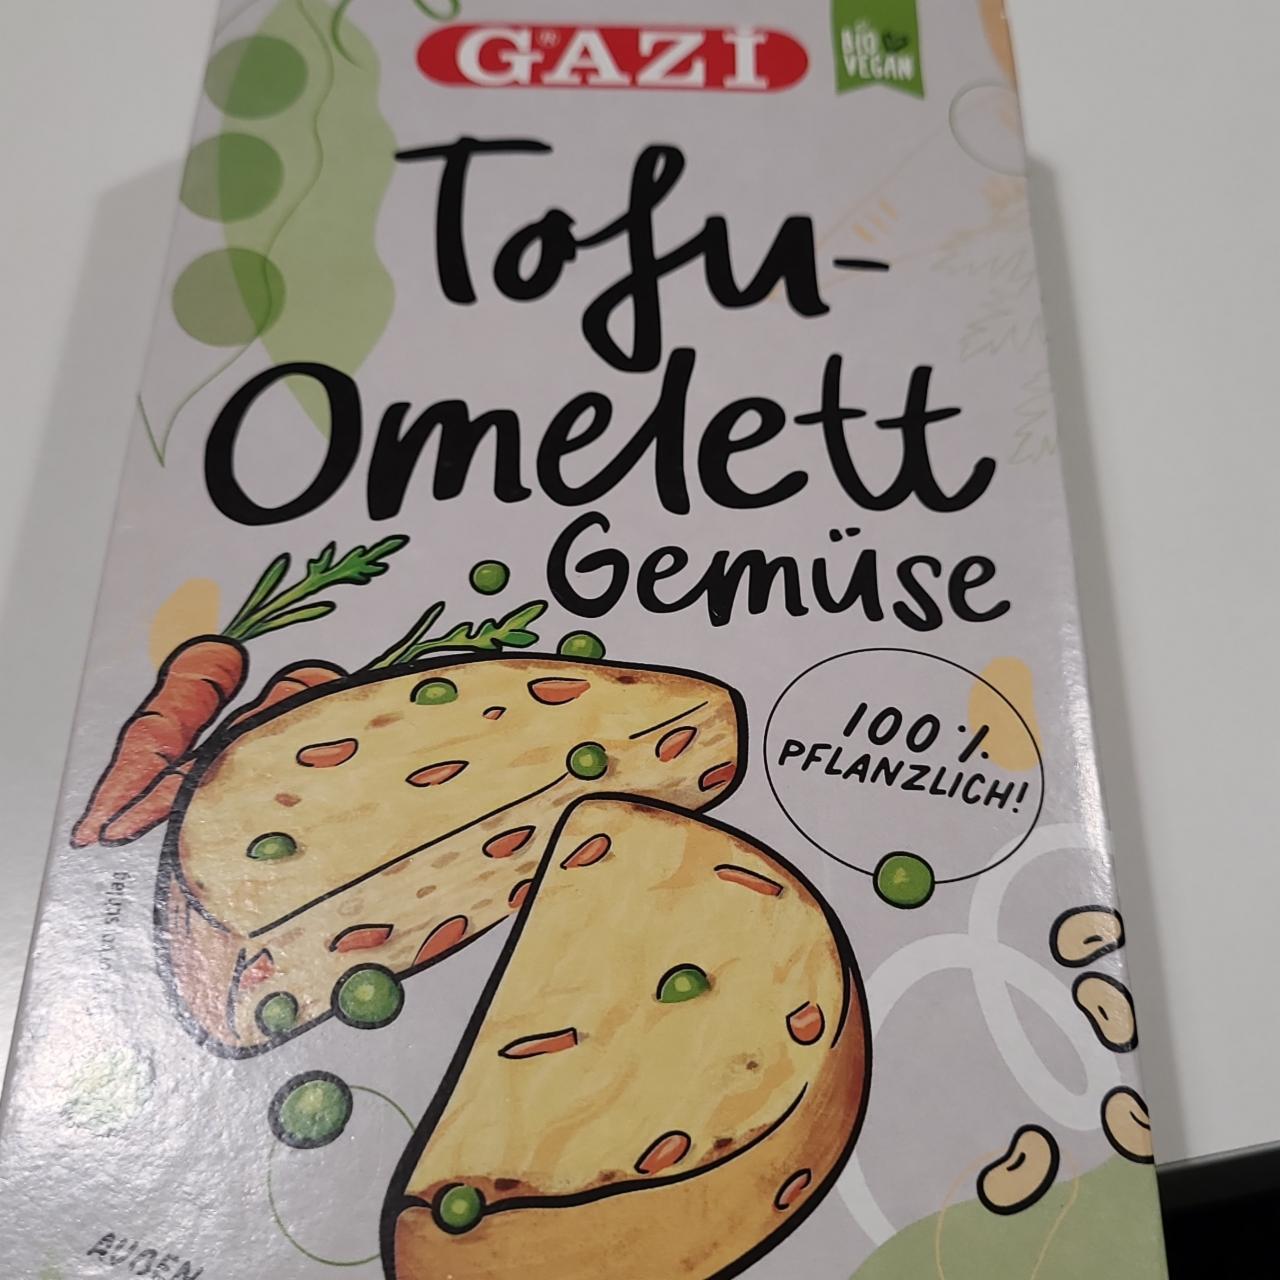 Fotografie - Tofu-omelett gemüse Gazi